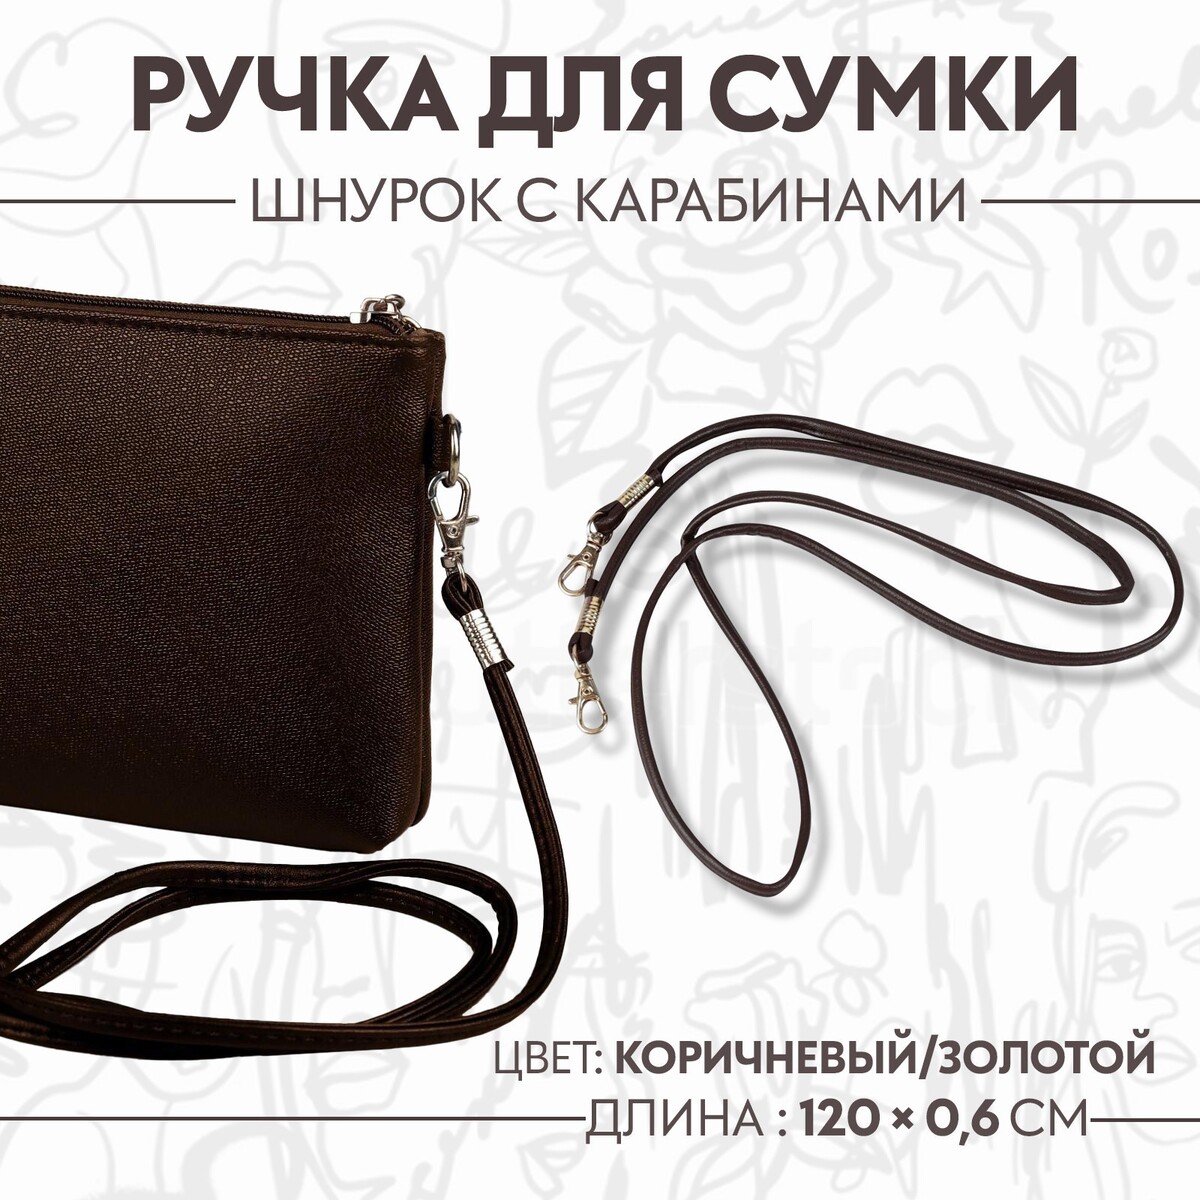 Ручка-шнурок для сумки, с карабинами, 120 × 0,6 см, цвет коричневый ручка для сумки стропа с карабинами 139 ± 3 × 3 8 см светло коричневый